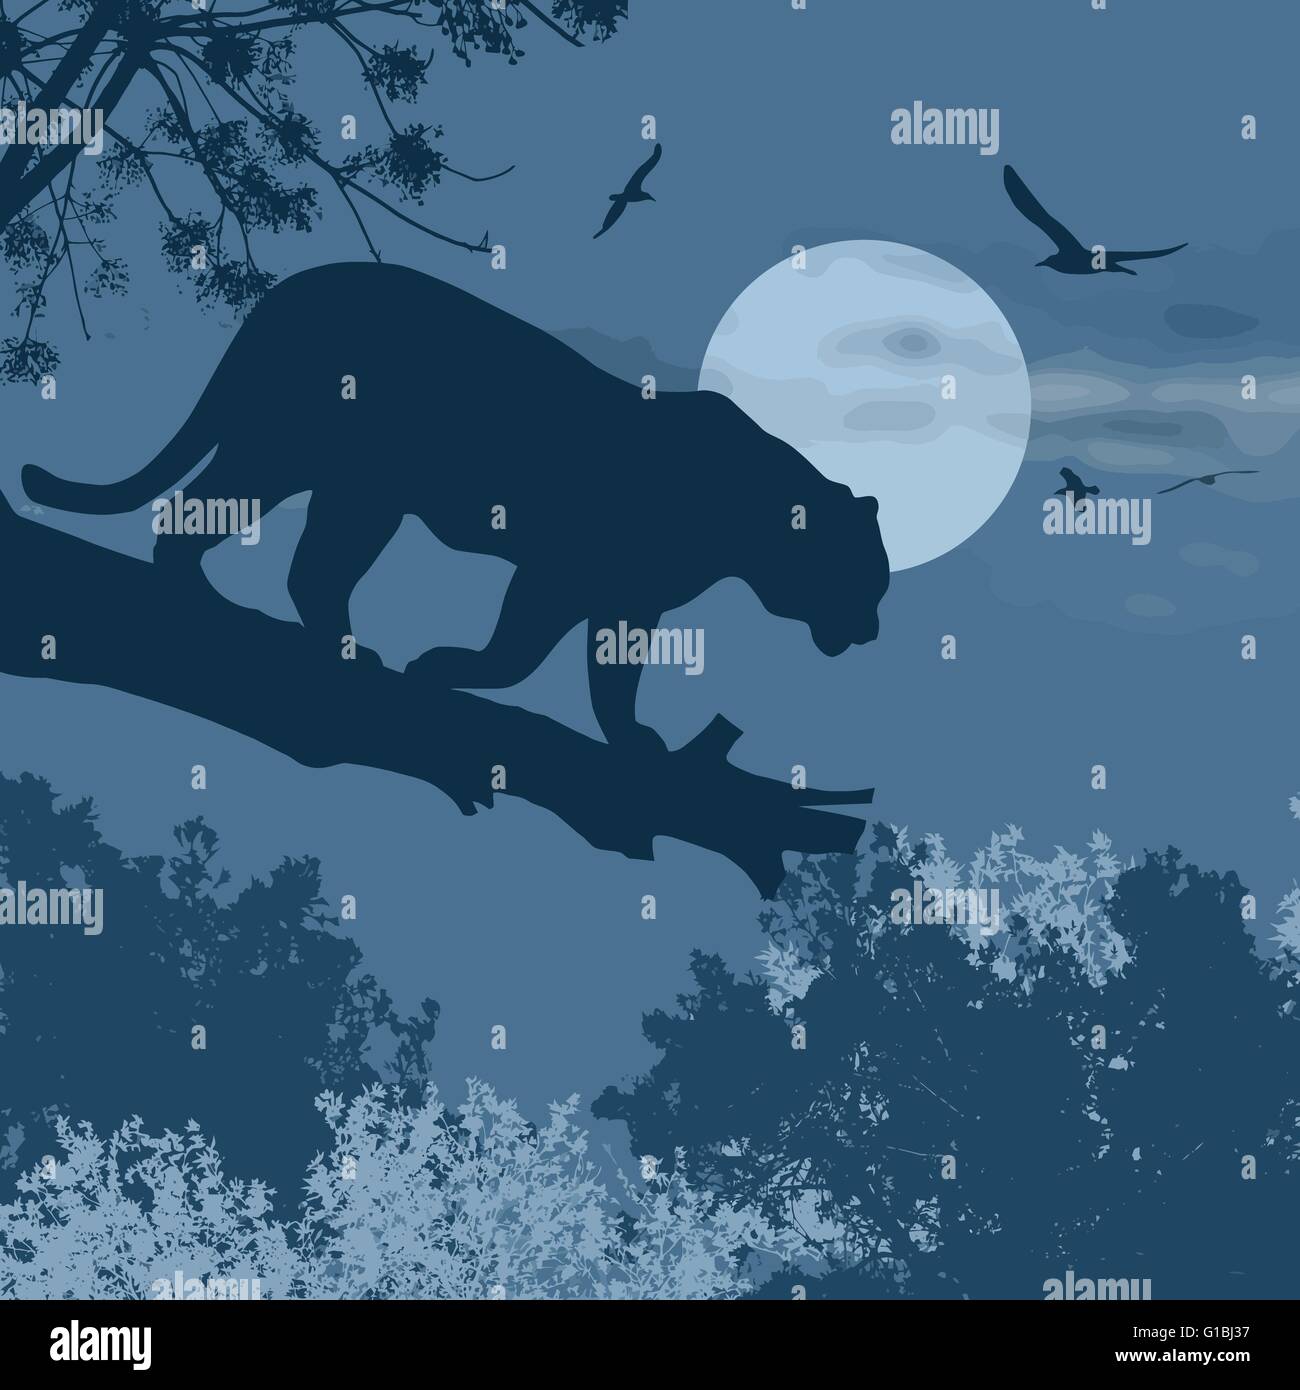 Silhouette-Ansicht der Panther auf einem Baum gegen den Mond in der blauen Nacht, Vektor-illustration Stock Vektor